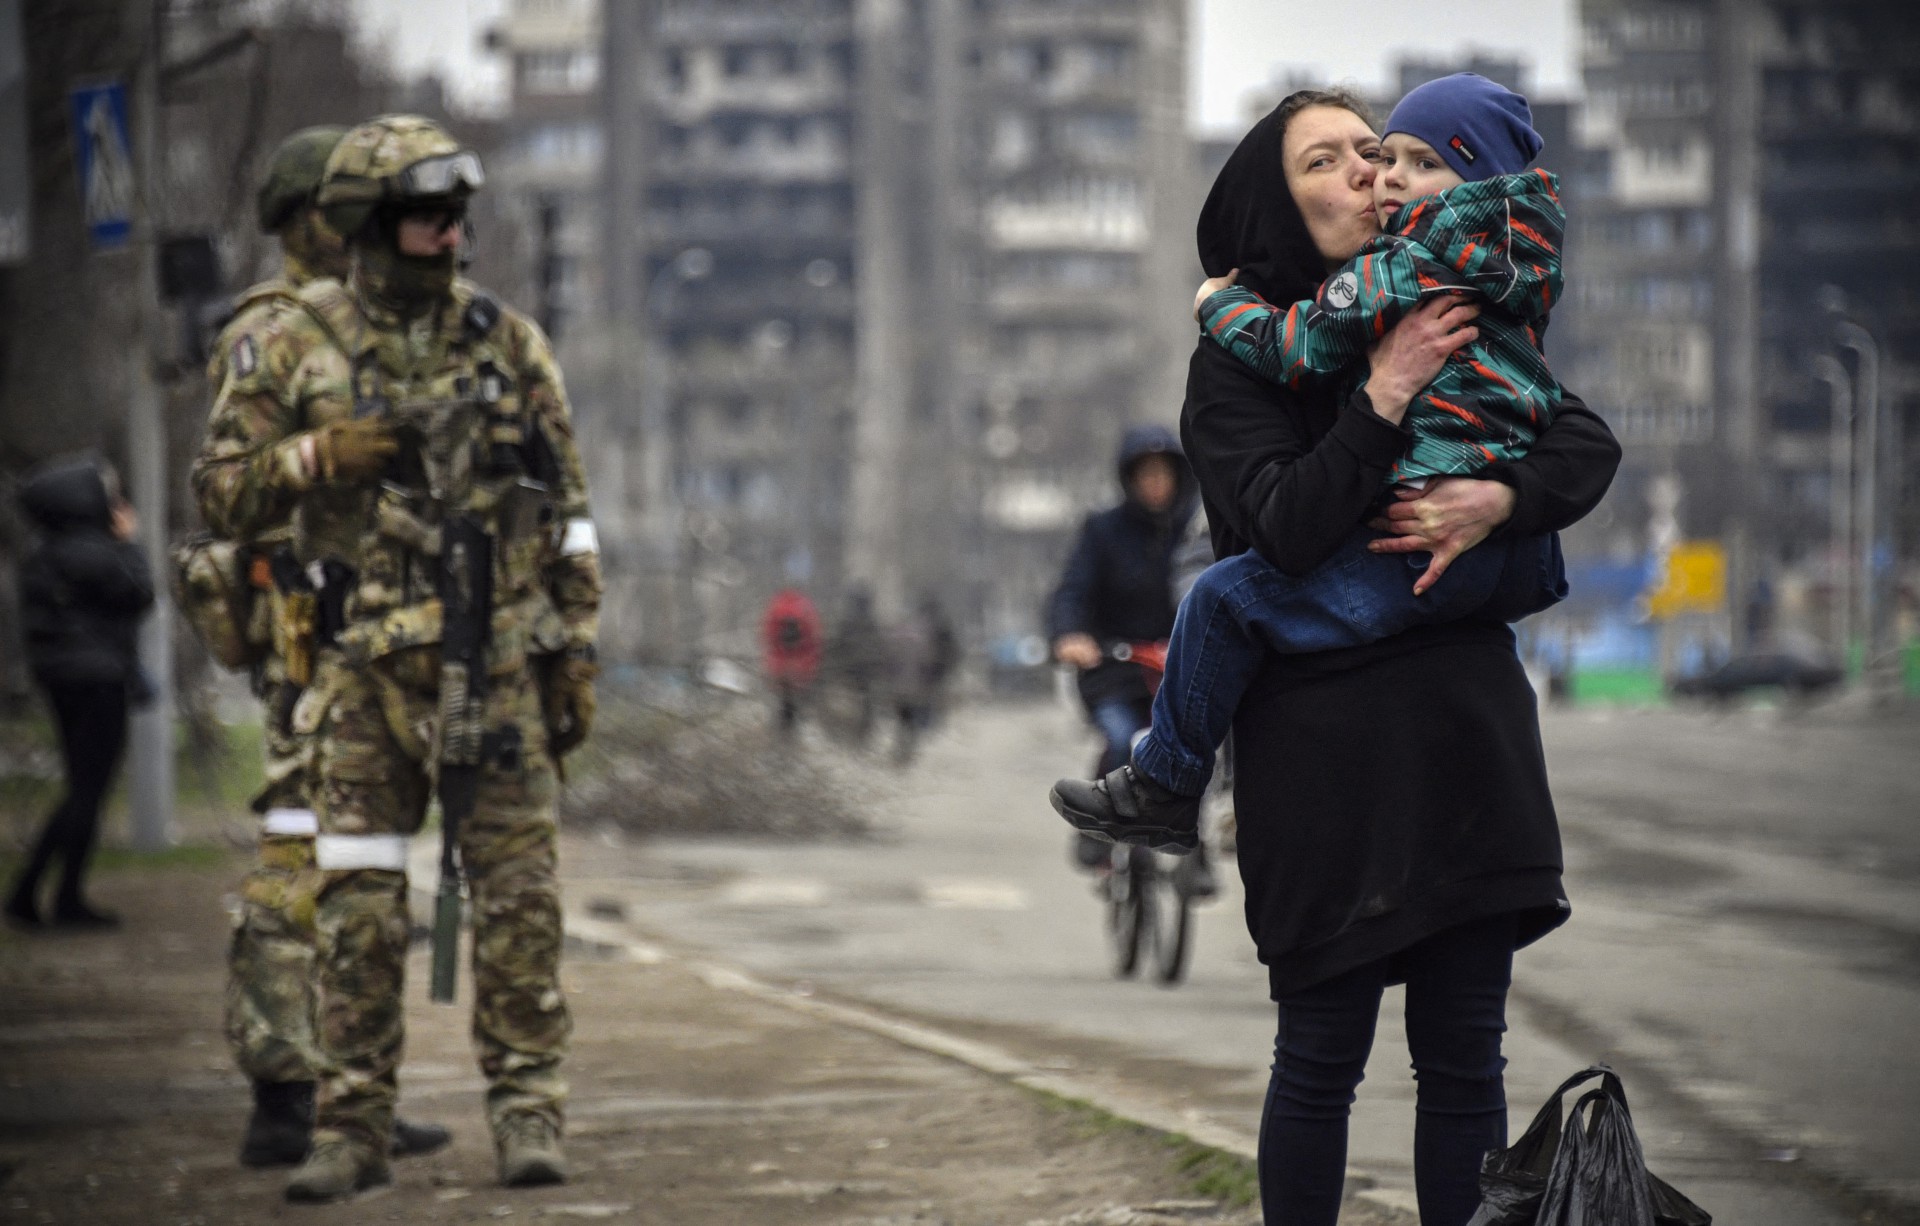 MULHER segura e beija uma criança ao lado de soldados russos em uma rua de Mariupol (Foto: ALEXANDER NEMENOV / AFP)